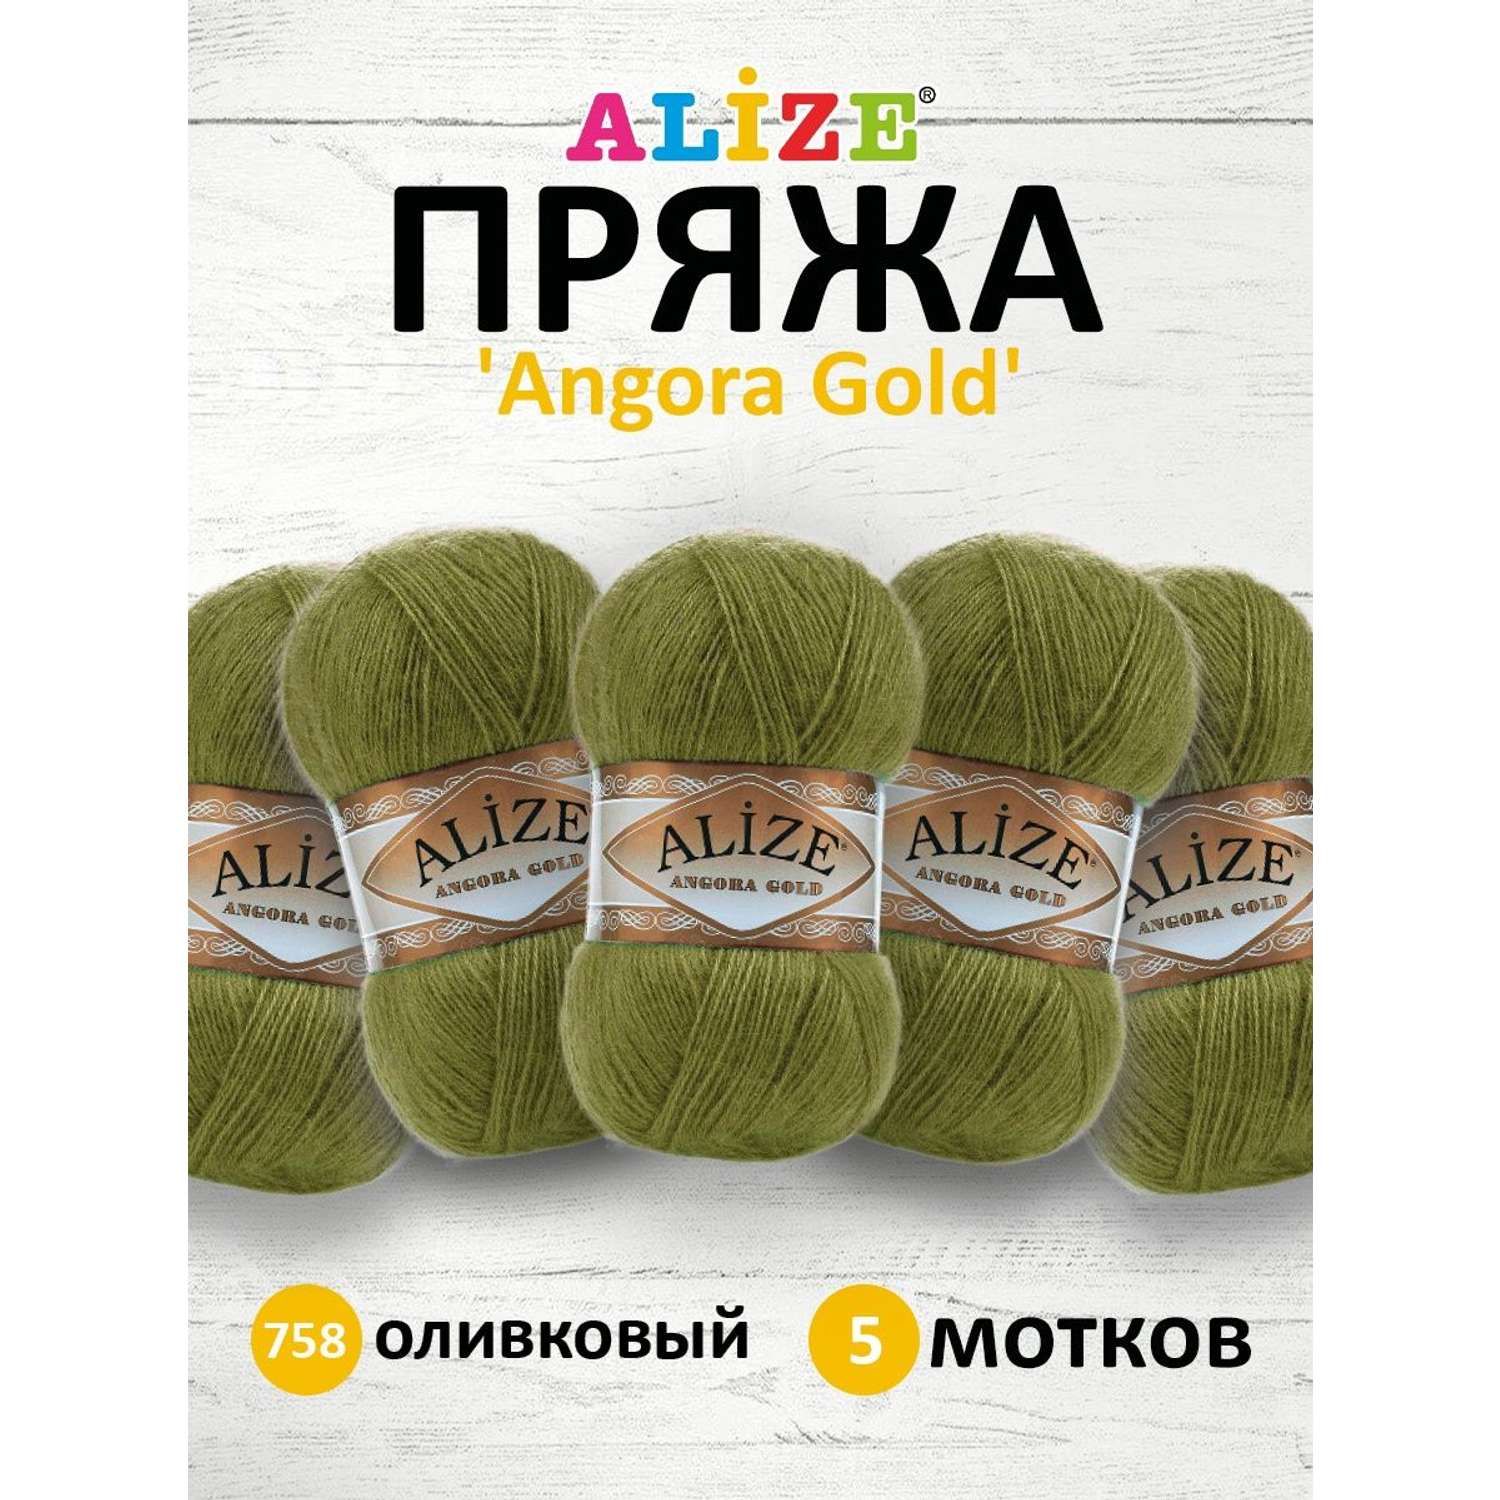 Пряжа Alize мягкая теплая для шарфов кардиганов Angora Gold 100 гр 550 м 5 мотков 758 оливковый - фото 1